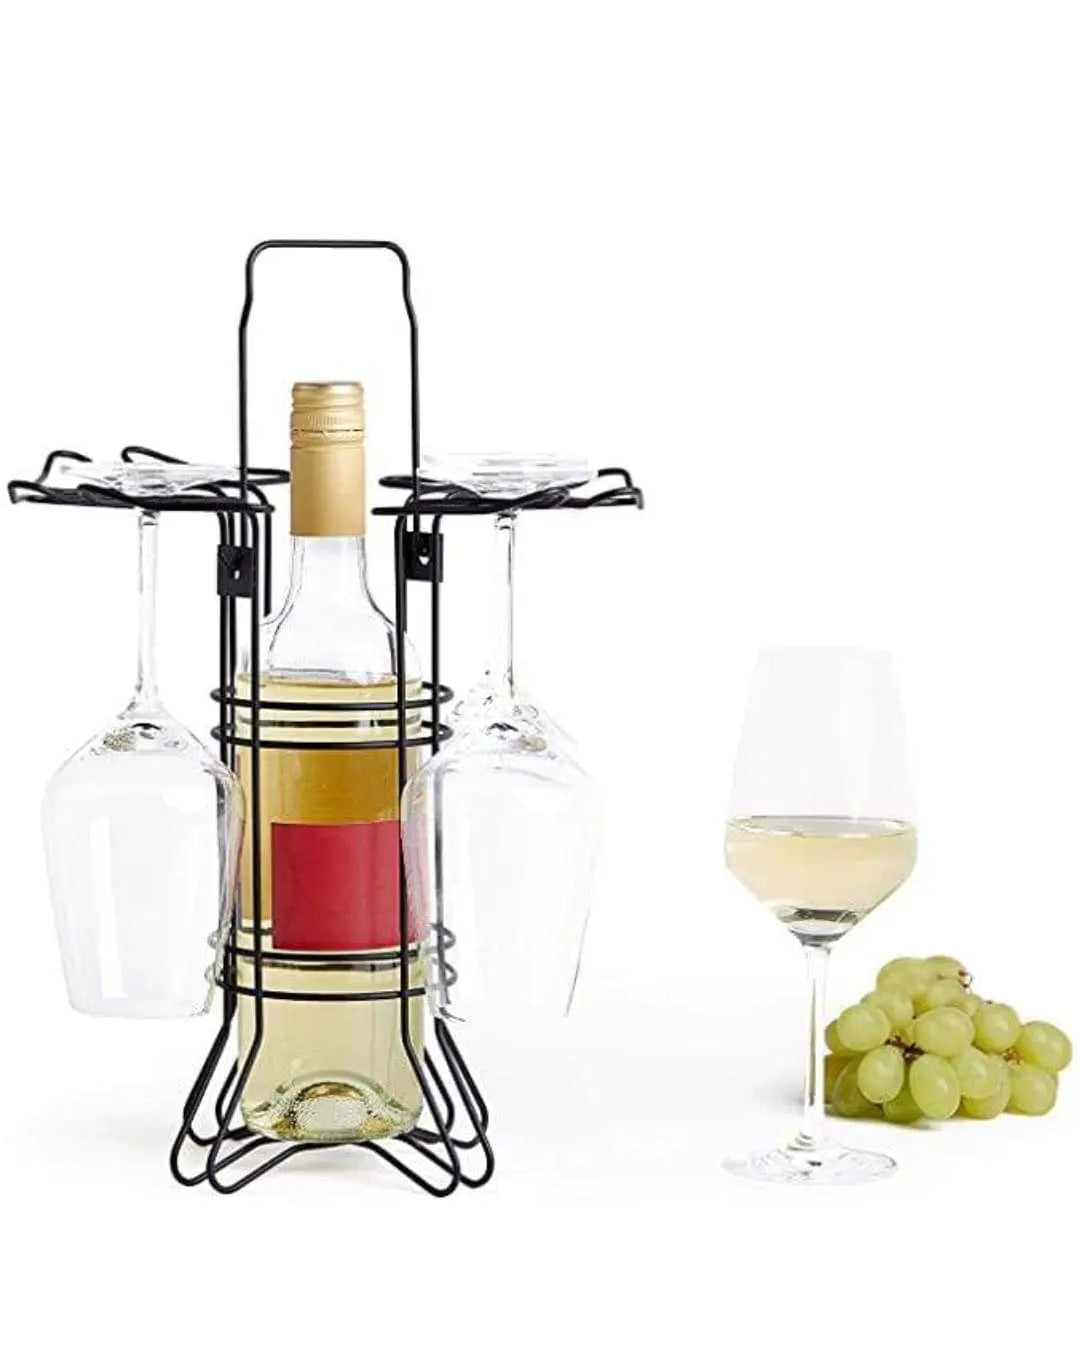 VonShef Wine Bottle And Glass Carrier Drinks Storage